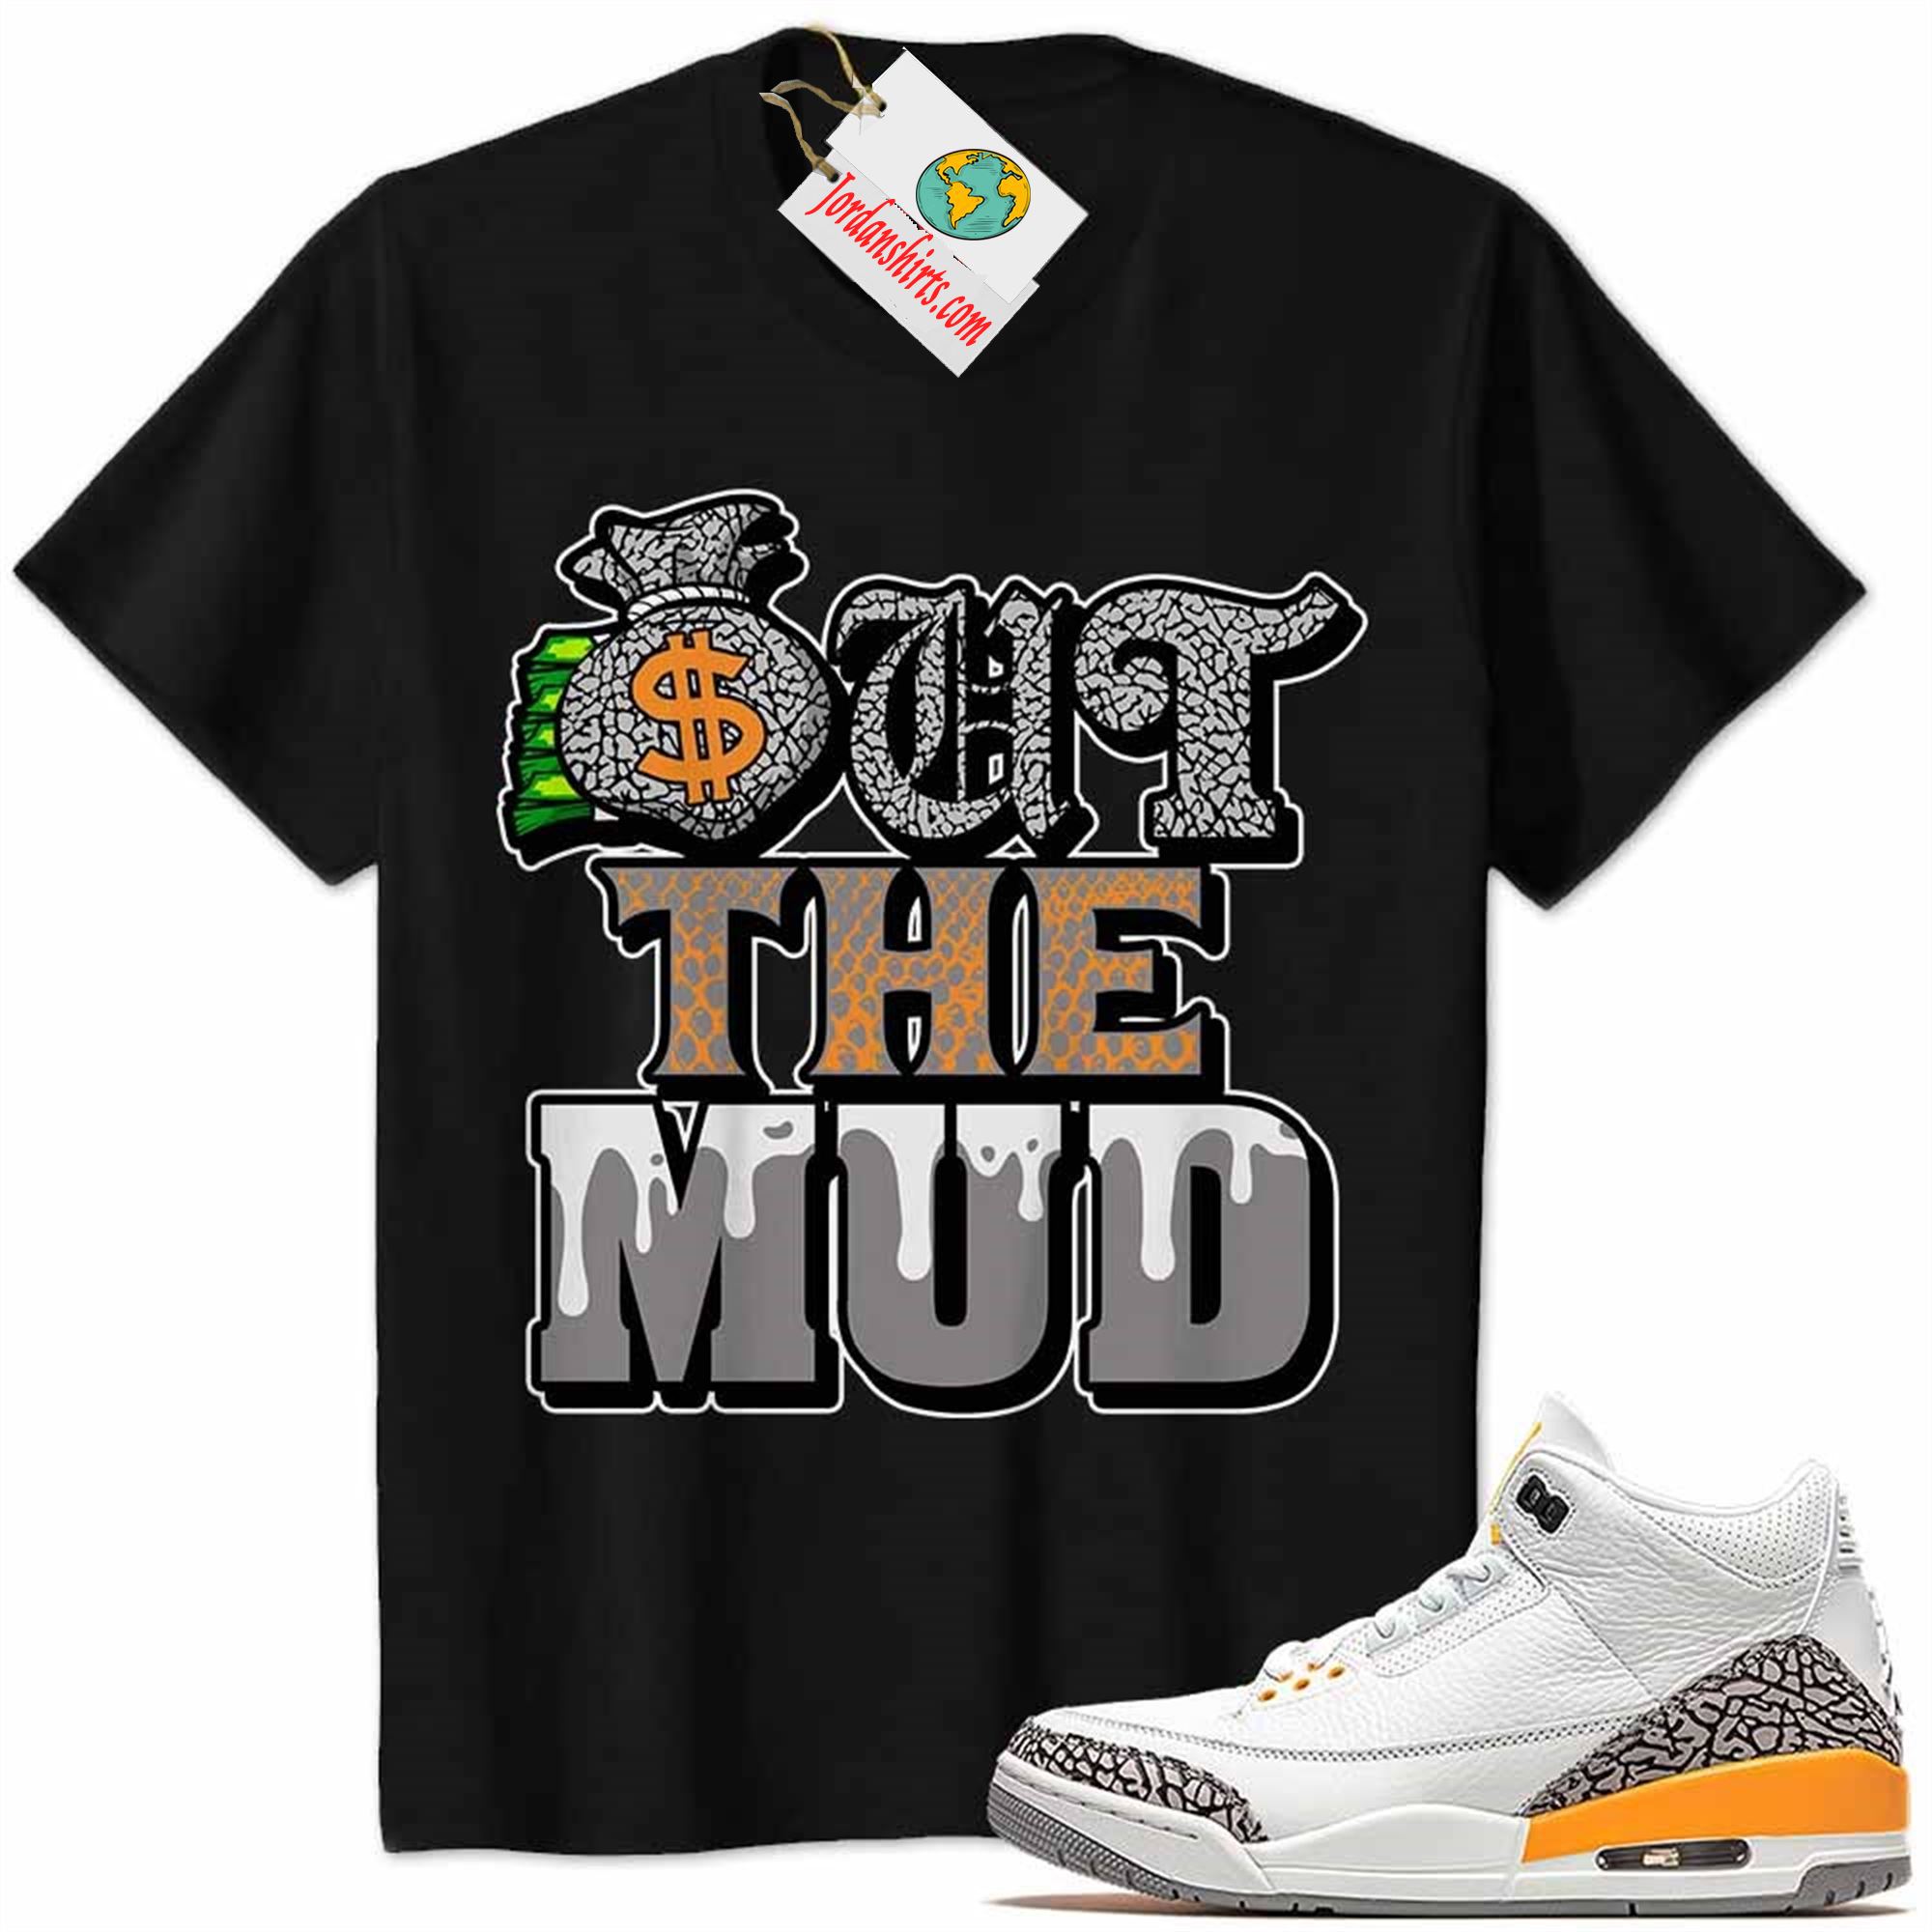 Jordan 3 Shirt, Jordan 3 Laser Orange Shirt Out The Mud Money Bag Black Size Up To 5xl